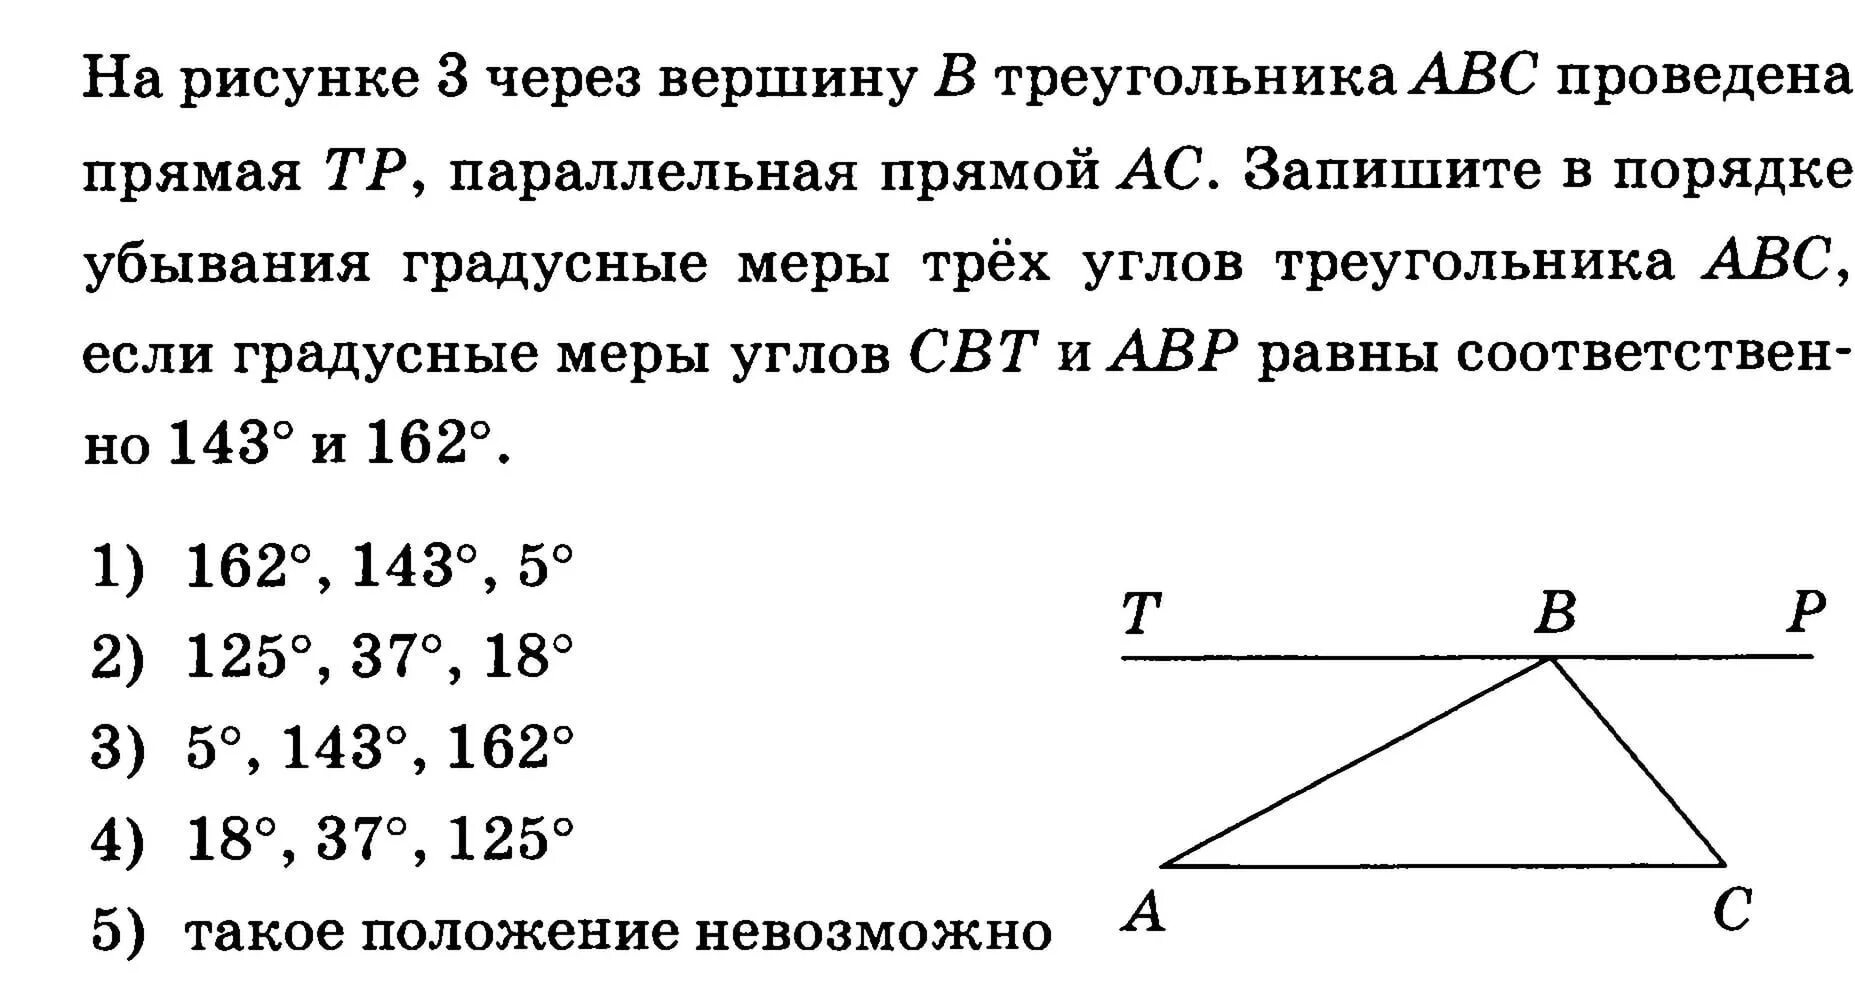 Через вершины треугольника abc. Через вершину треугольника проведена прямая. Через вершины треугольника проведены прямые. Прямая проведенная через вершину а треугольника АВС. Через вершину с треугольника АВС проведена.